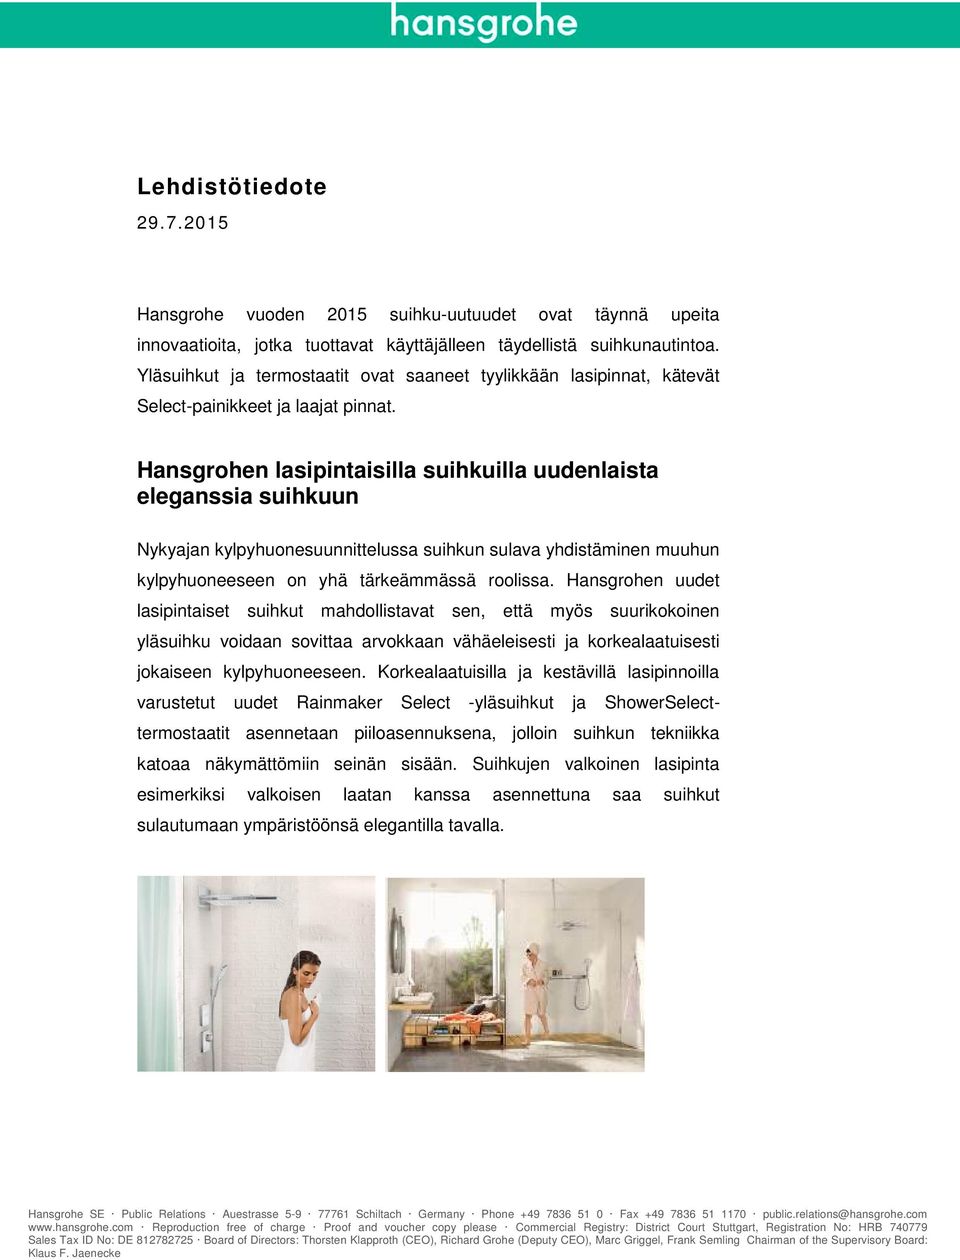 Hansgrohen lasipintaisilla suihkuilla uudenlaista eleganssia suihkuun Nykyajan kylpyhuonesuunnittelussa suihkun sulava yhdistäminen muuhun kylpyhuoneeseen on yhä tärkeämmässä roolissa.